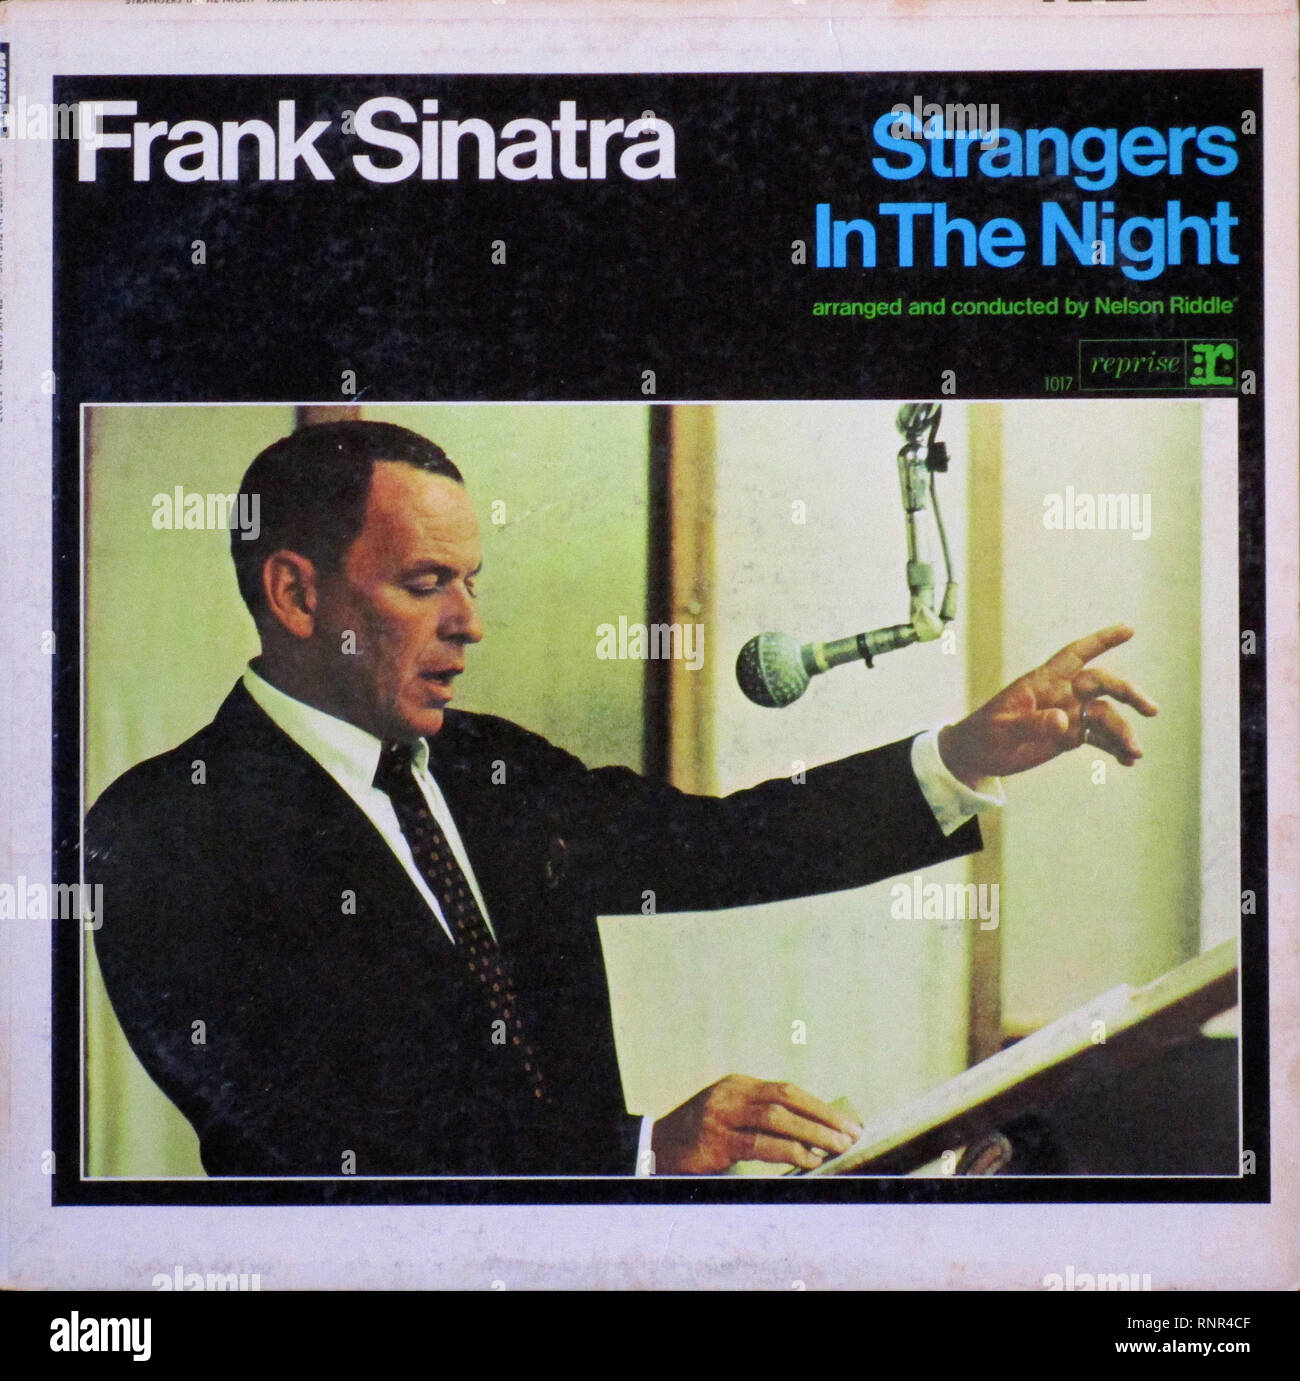 Vintage Vinilo LP cubrir extraños en la noche Frank Sinatra 1966 Foto de stock